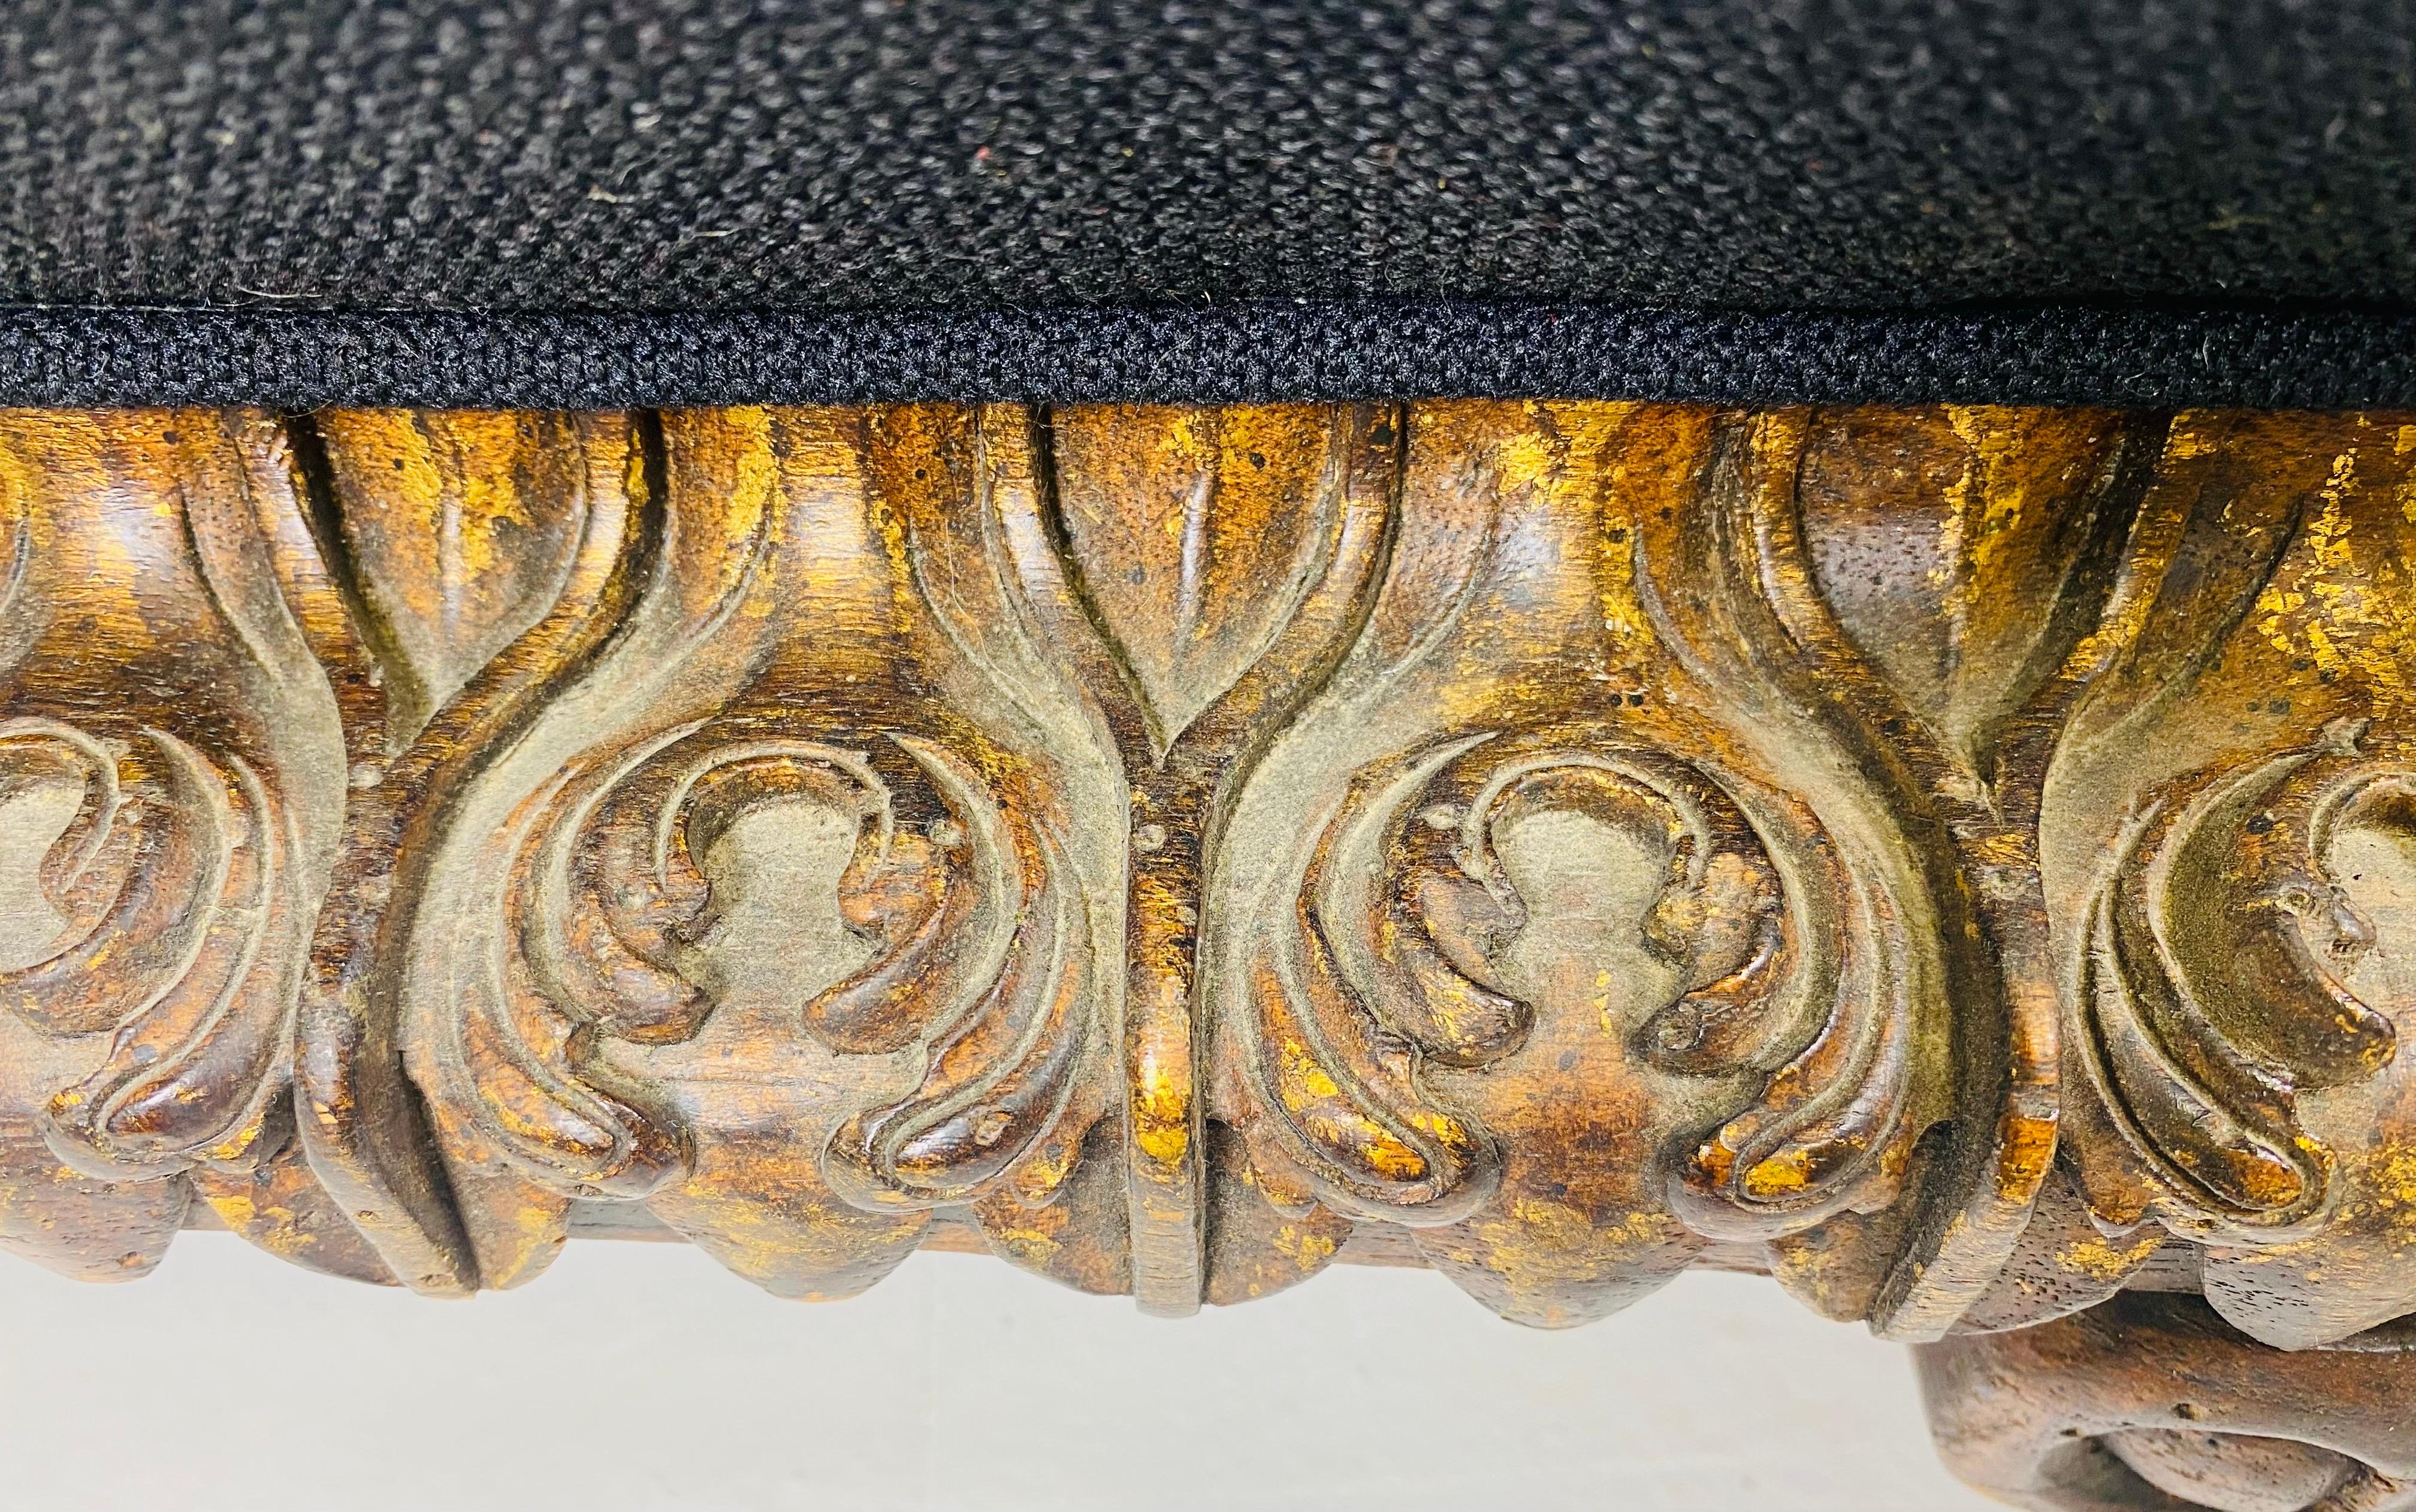 Il s'agit d'un ottoman surdimensionné, récemment tapissé, d'inspiration rococo par Theodore Alexander. Ce pouf est doté d'un cadre orné, sculpté à la main, de style rococo, avec des pieds doux et incurvés. L'ottoman a été récemment rembourré en